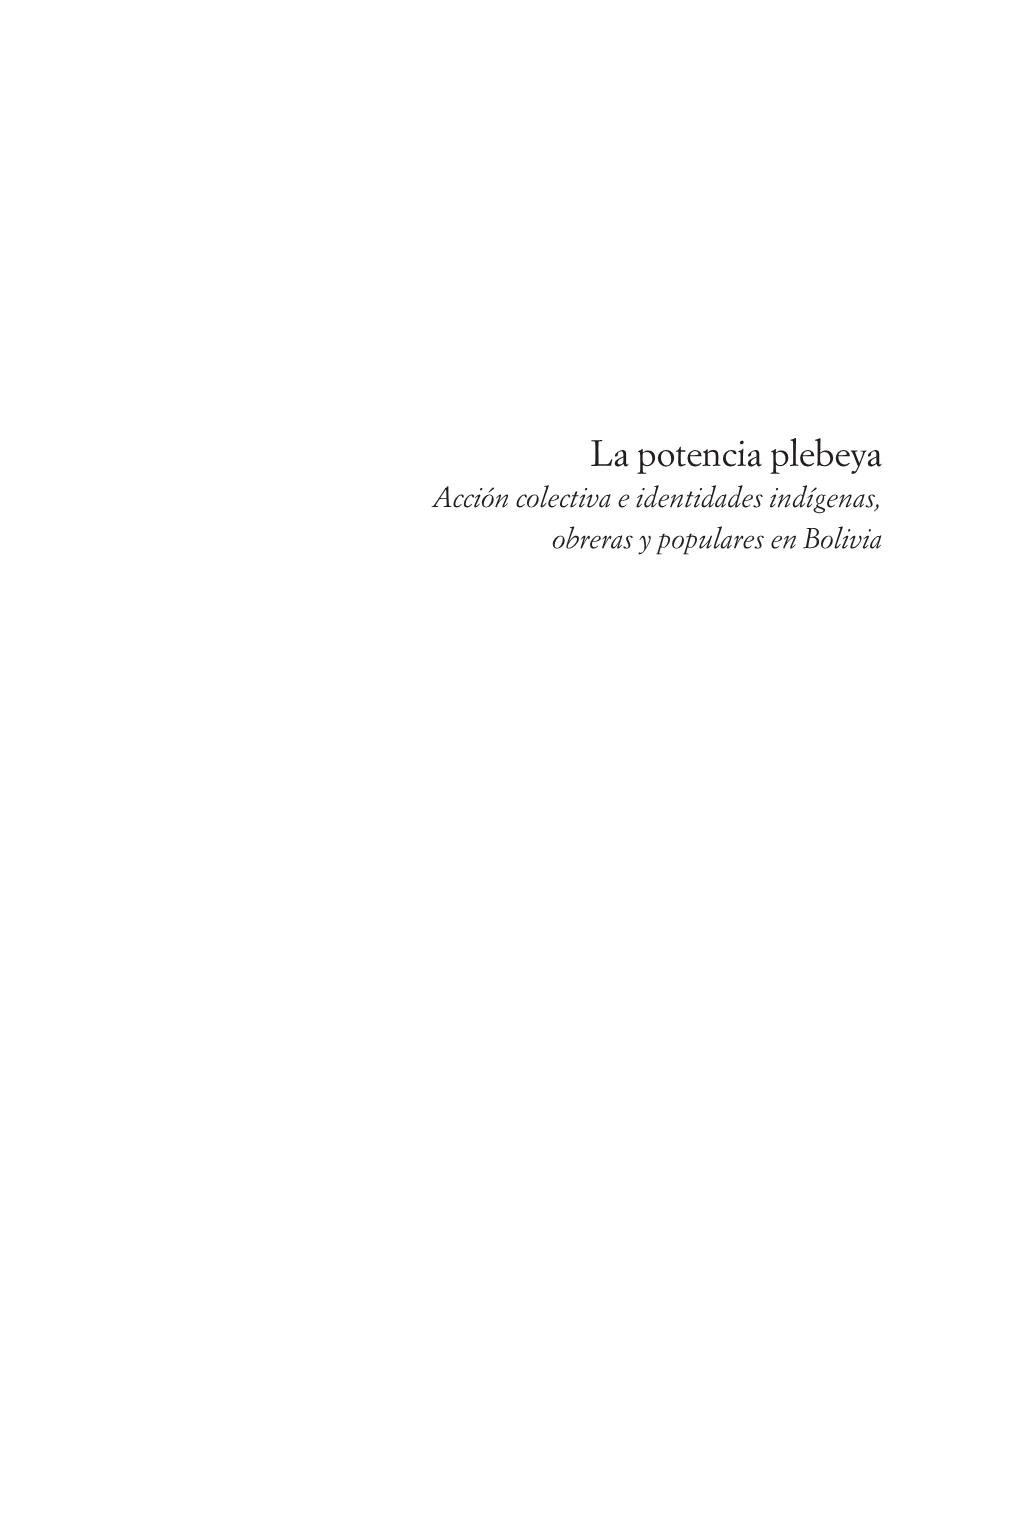 La Potencia Plebeya. Acción Colectiva E Identidades Indígenas, Obreras Y Populares En Bolivia, Buenos Aires, CLACSO-Prometeo